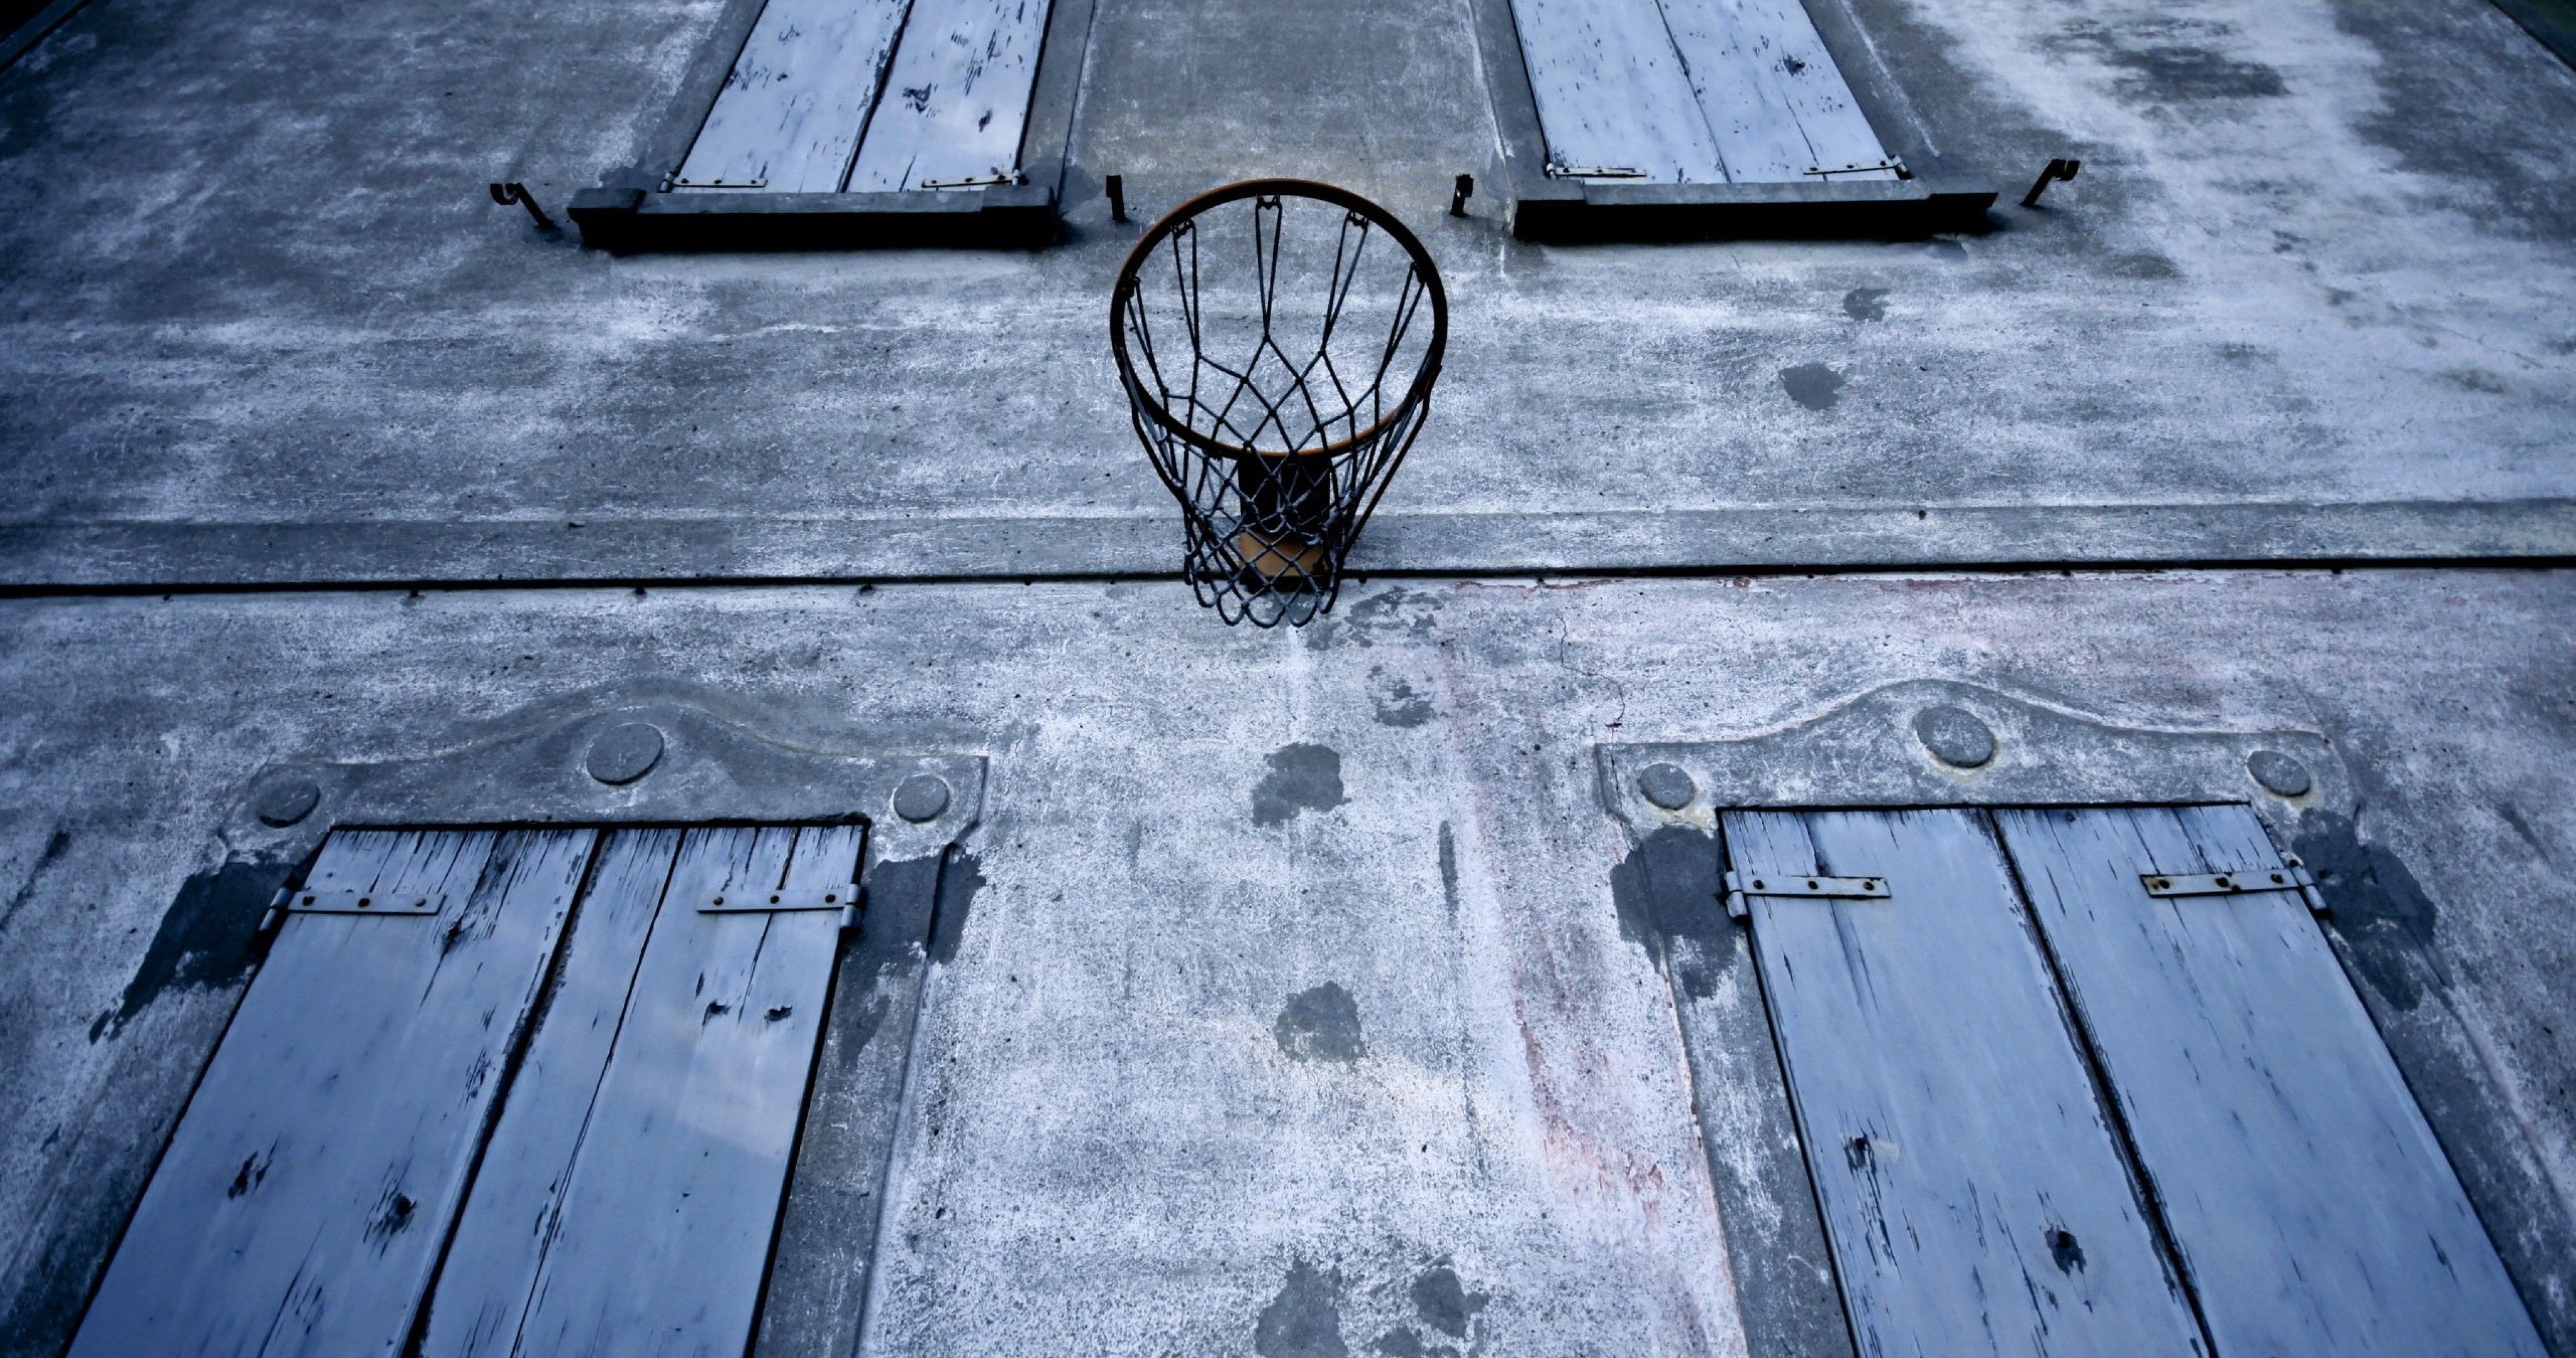 Basketball Court Wallpaper 4k